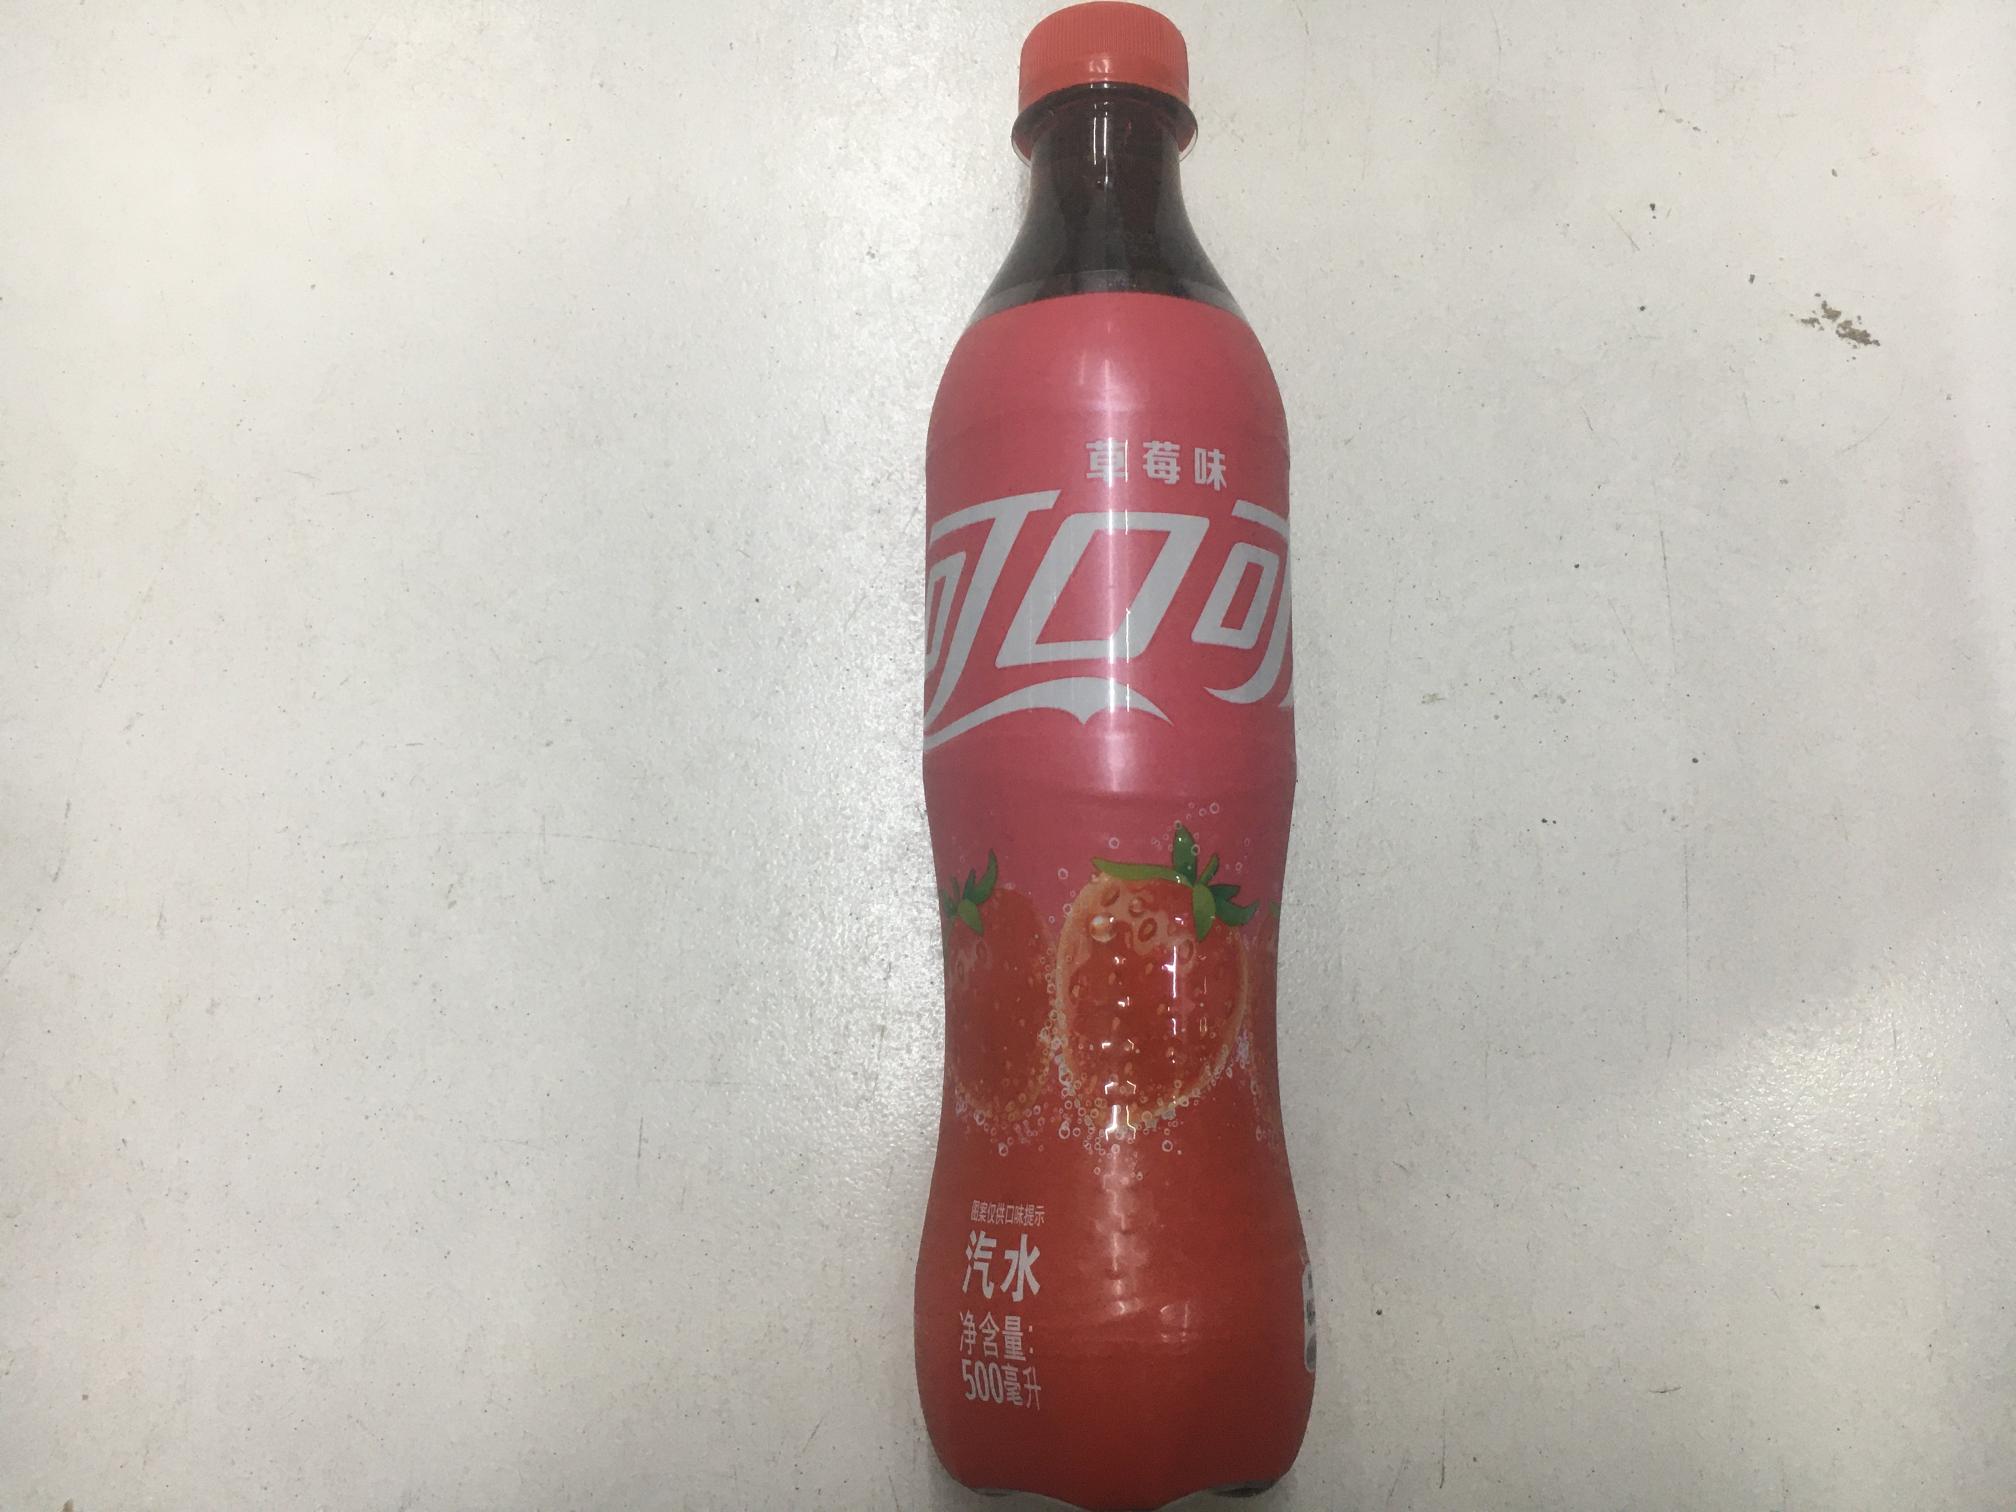 可口可乐500ml/瓶(草莓味)